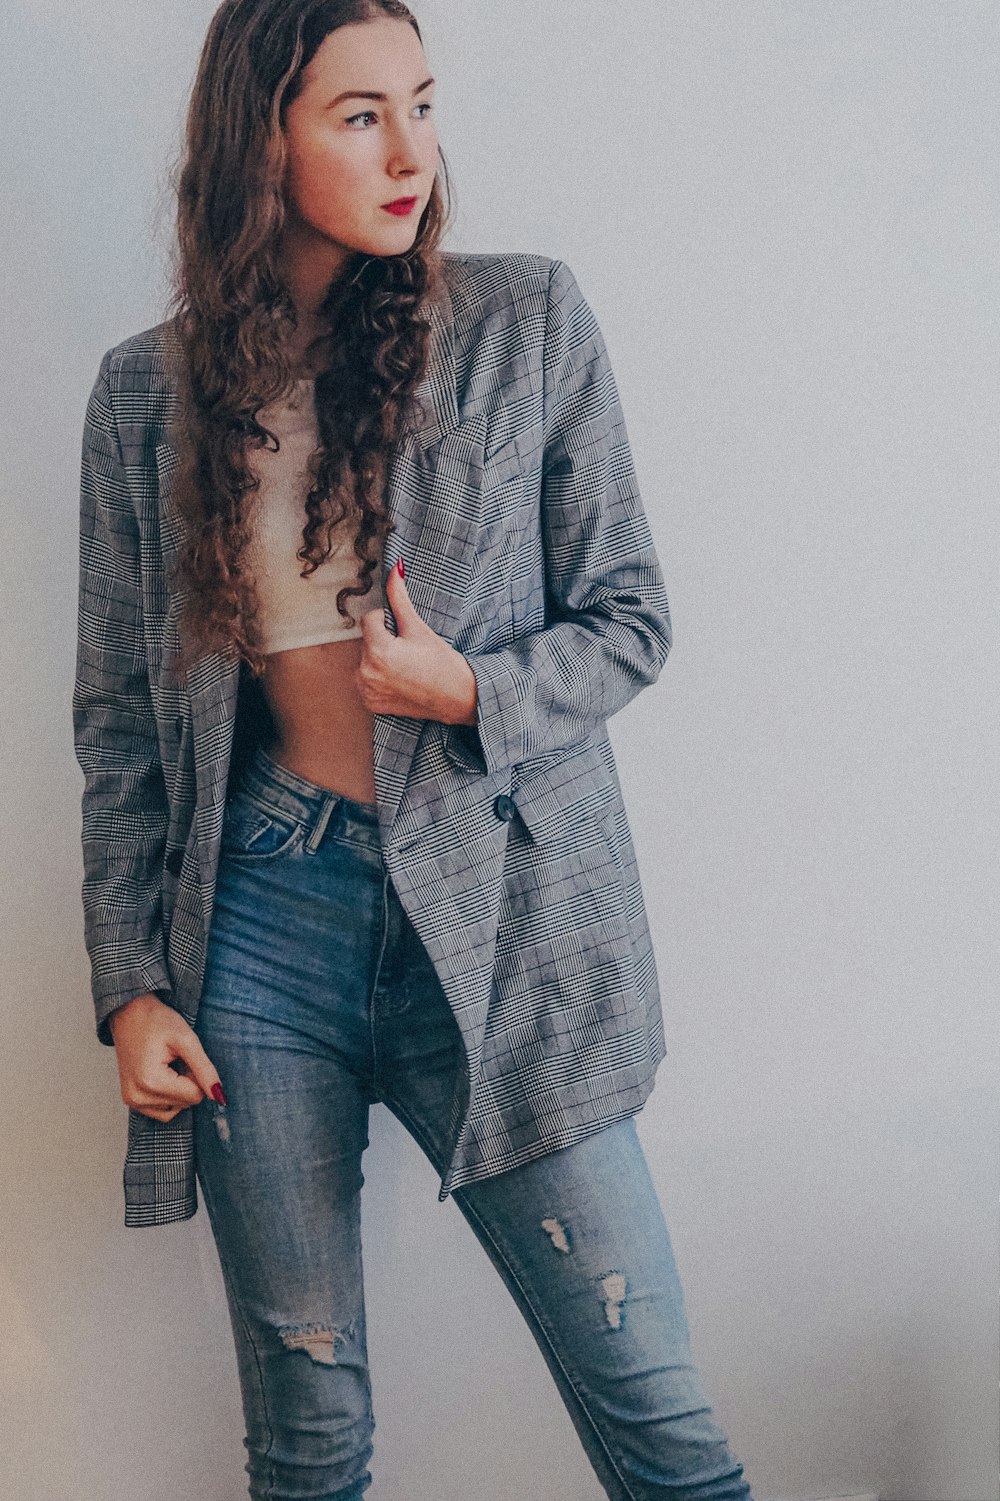 Cita Preludio Arenoso Foto Mujer con blazer gris y jeans azules – Imagen Nueva york gratis en  Unsplash